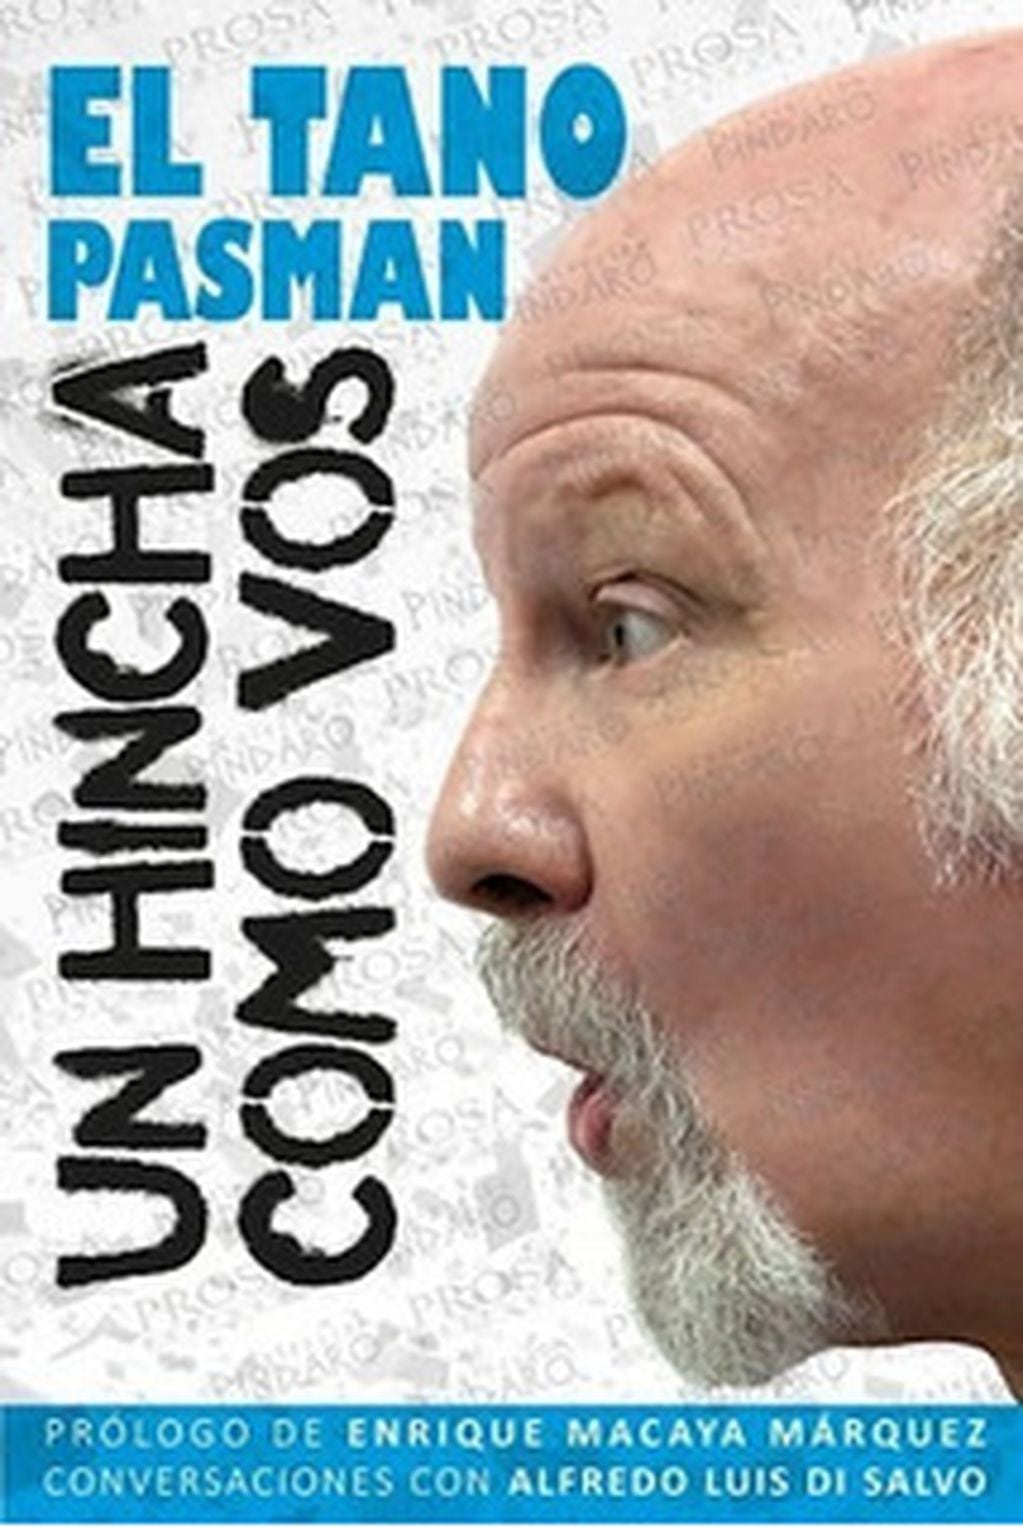 Tapa del libro oficial del "tano" Pasman